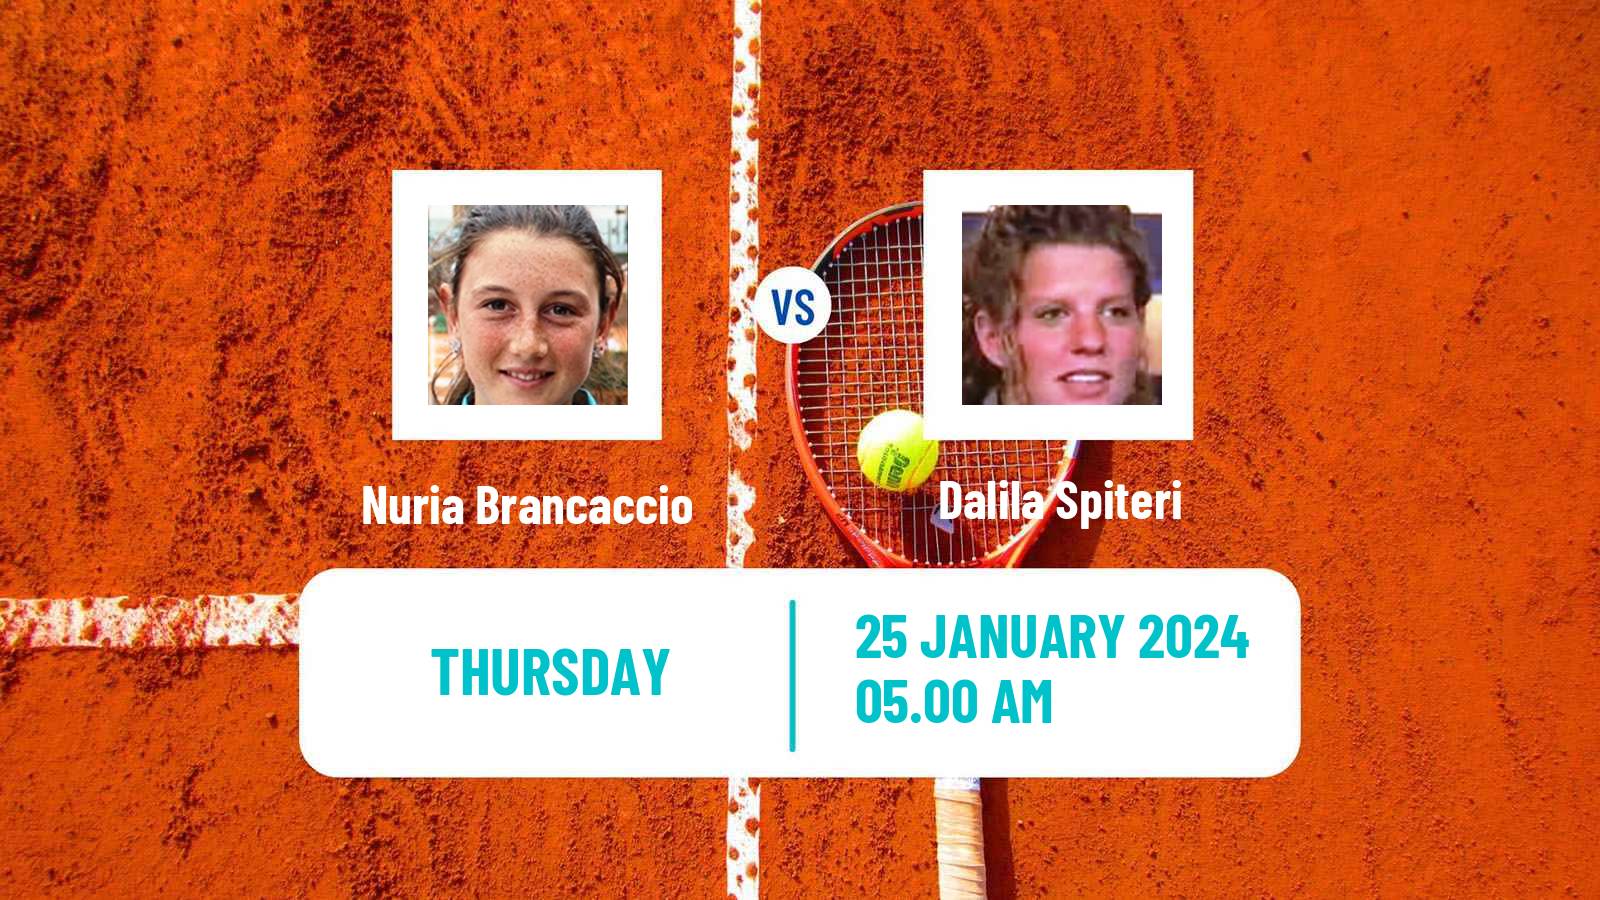 Tennis ITF W35 Monastir 2 Women Nuria Brancaccio - Dalila Spiteri